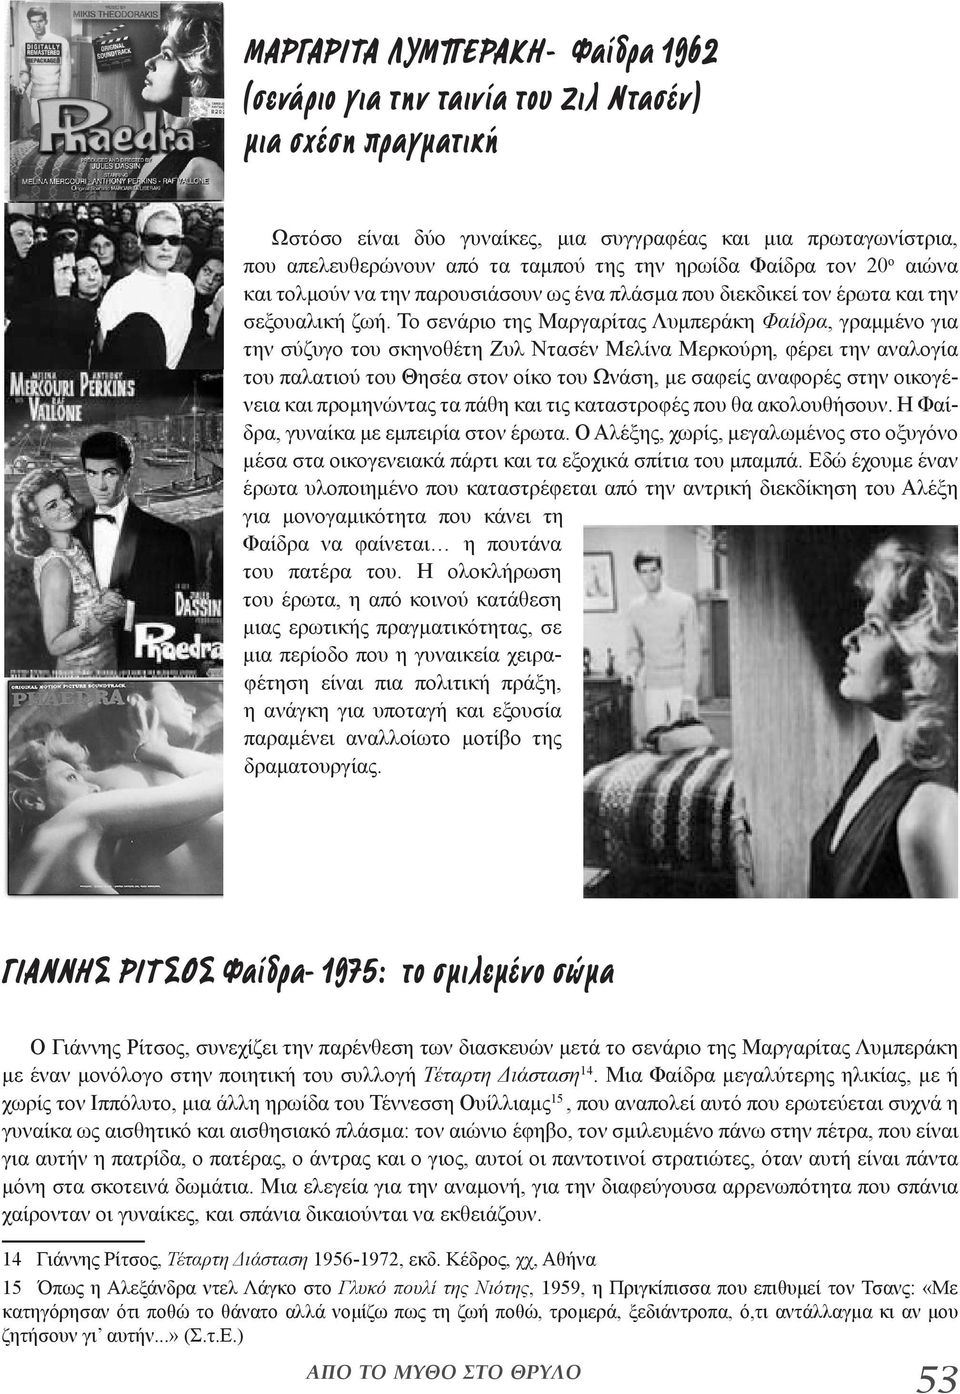 Το σενάριο της Μαργαρίτας Λυμπεράκη Φαίδρα, γραμμένο για την σύζυγο του σκηνοθέτη Ζυλ Ντασέν Μελίνα Μερκούρη, φέρει την αναλογία του παλατιού του Θησέα στον οίκο του Ωνάση, με σαφείς αναφορές στην